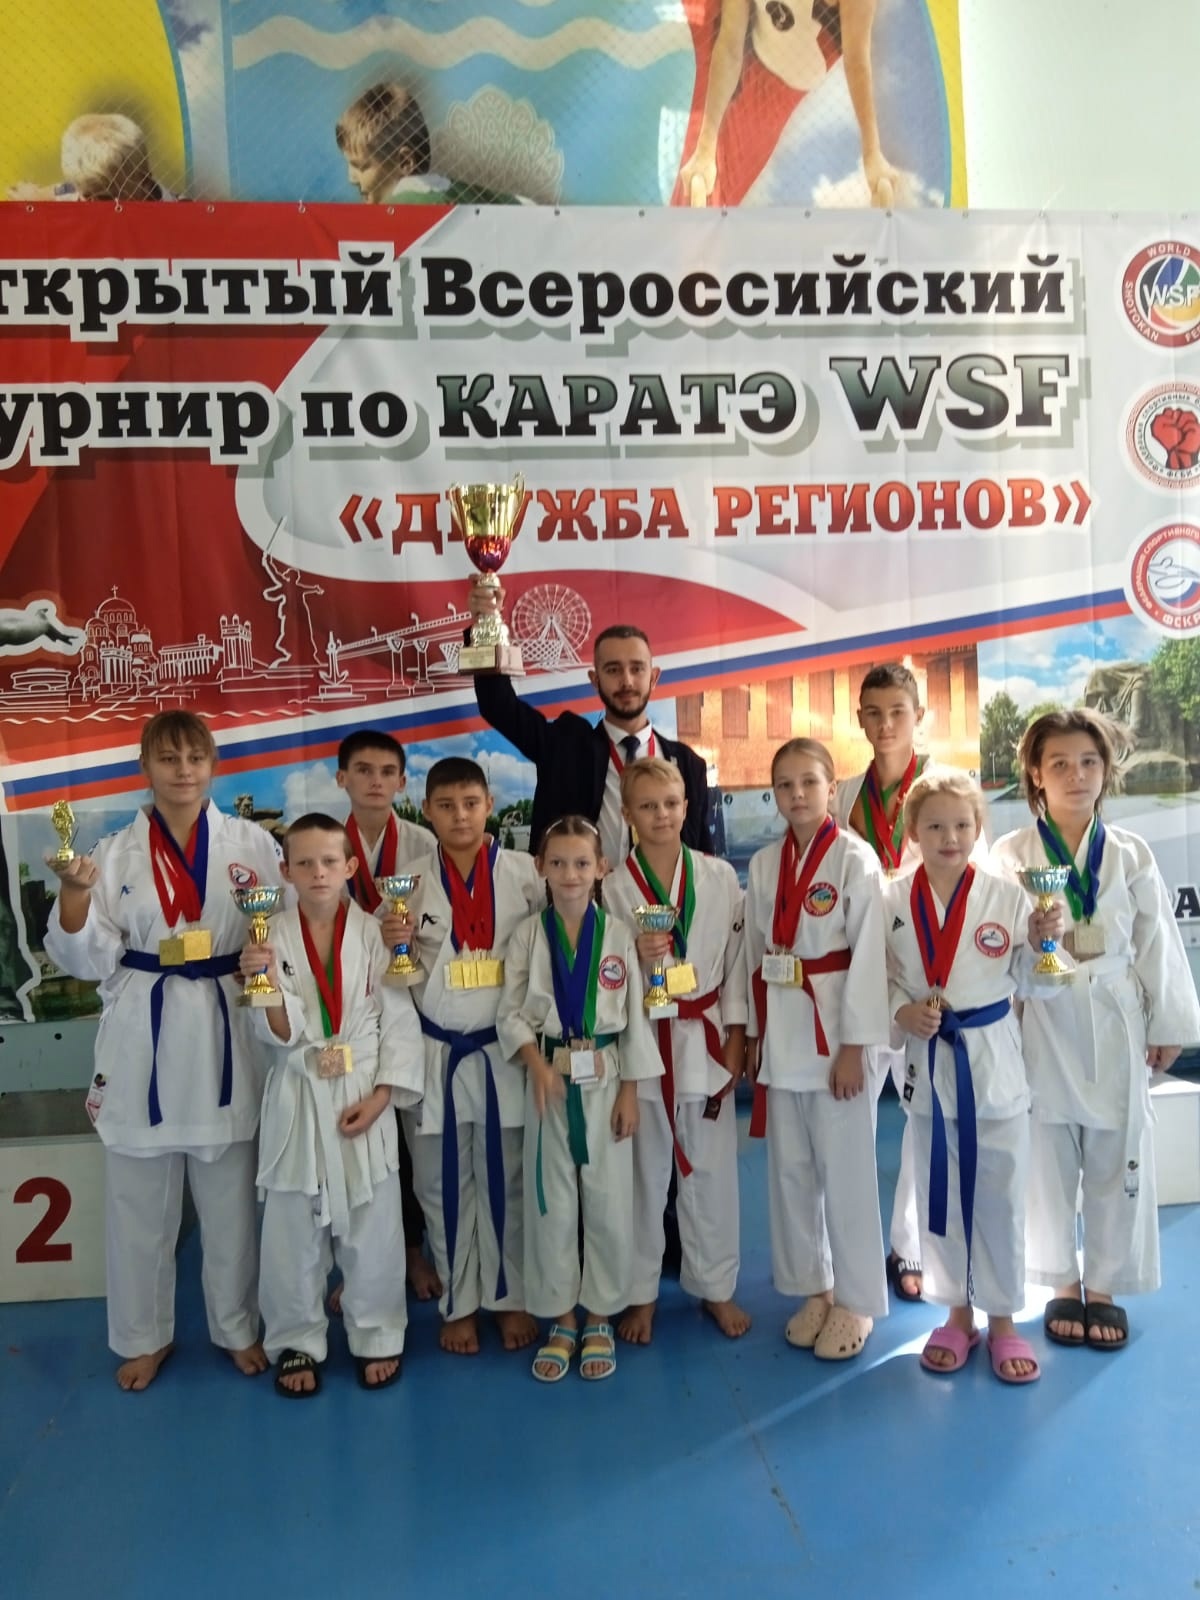 64 медали завоевали спортсмены из поселка Ахтырского